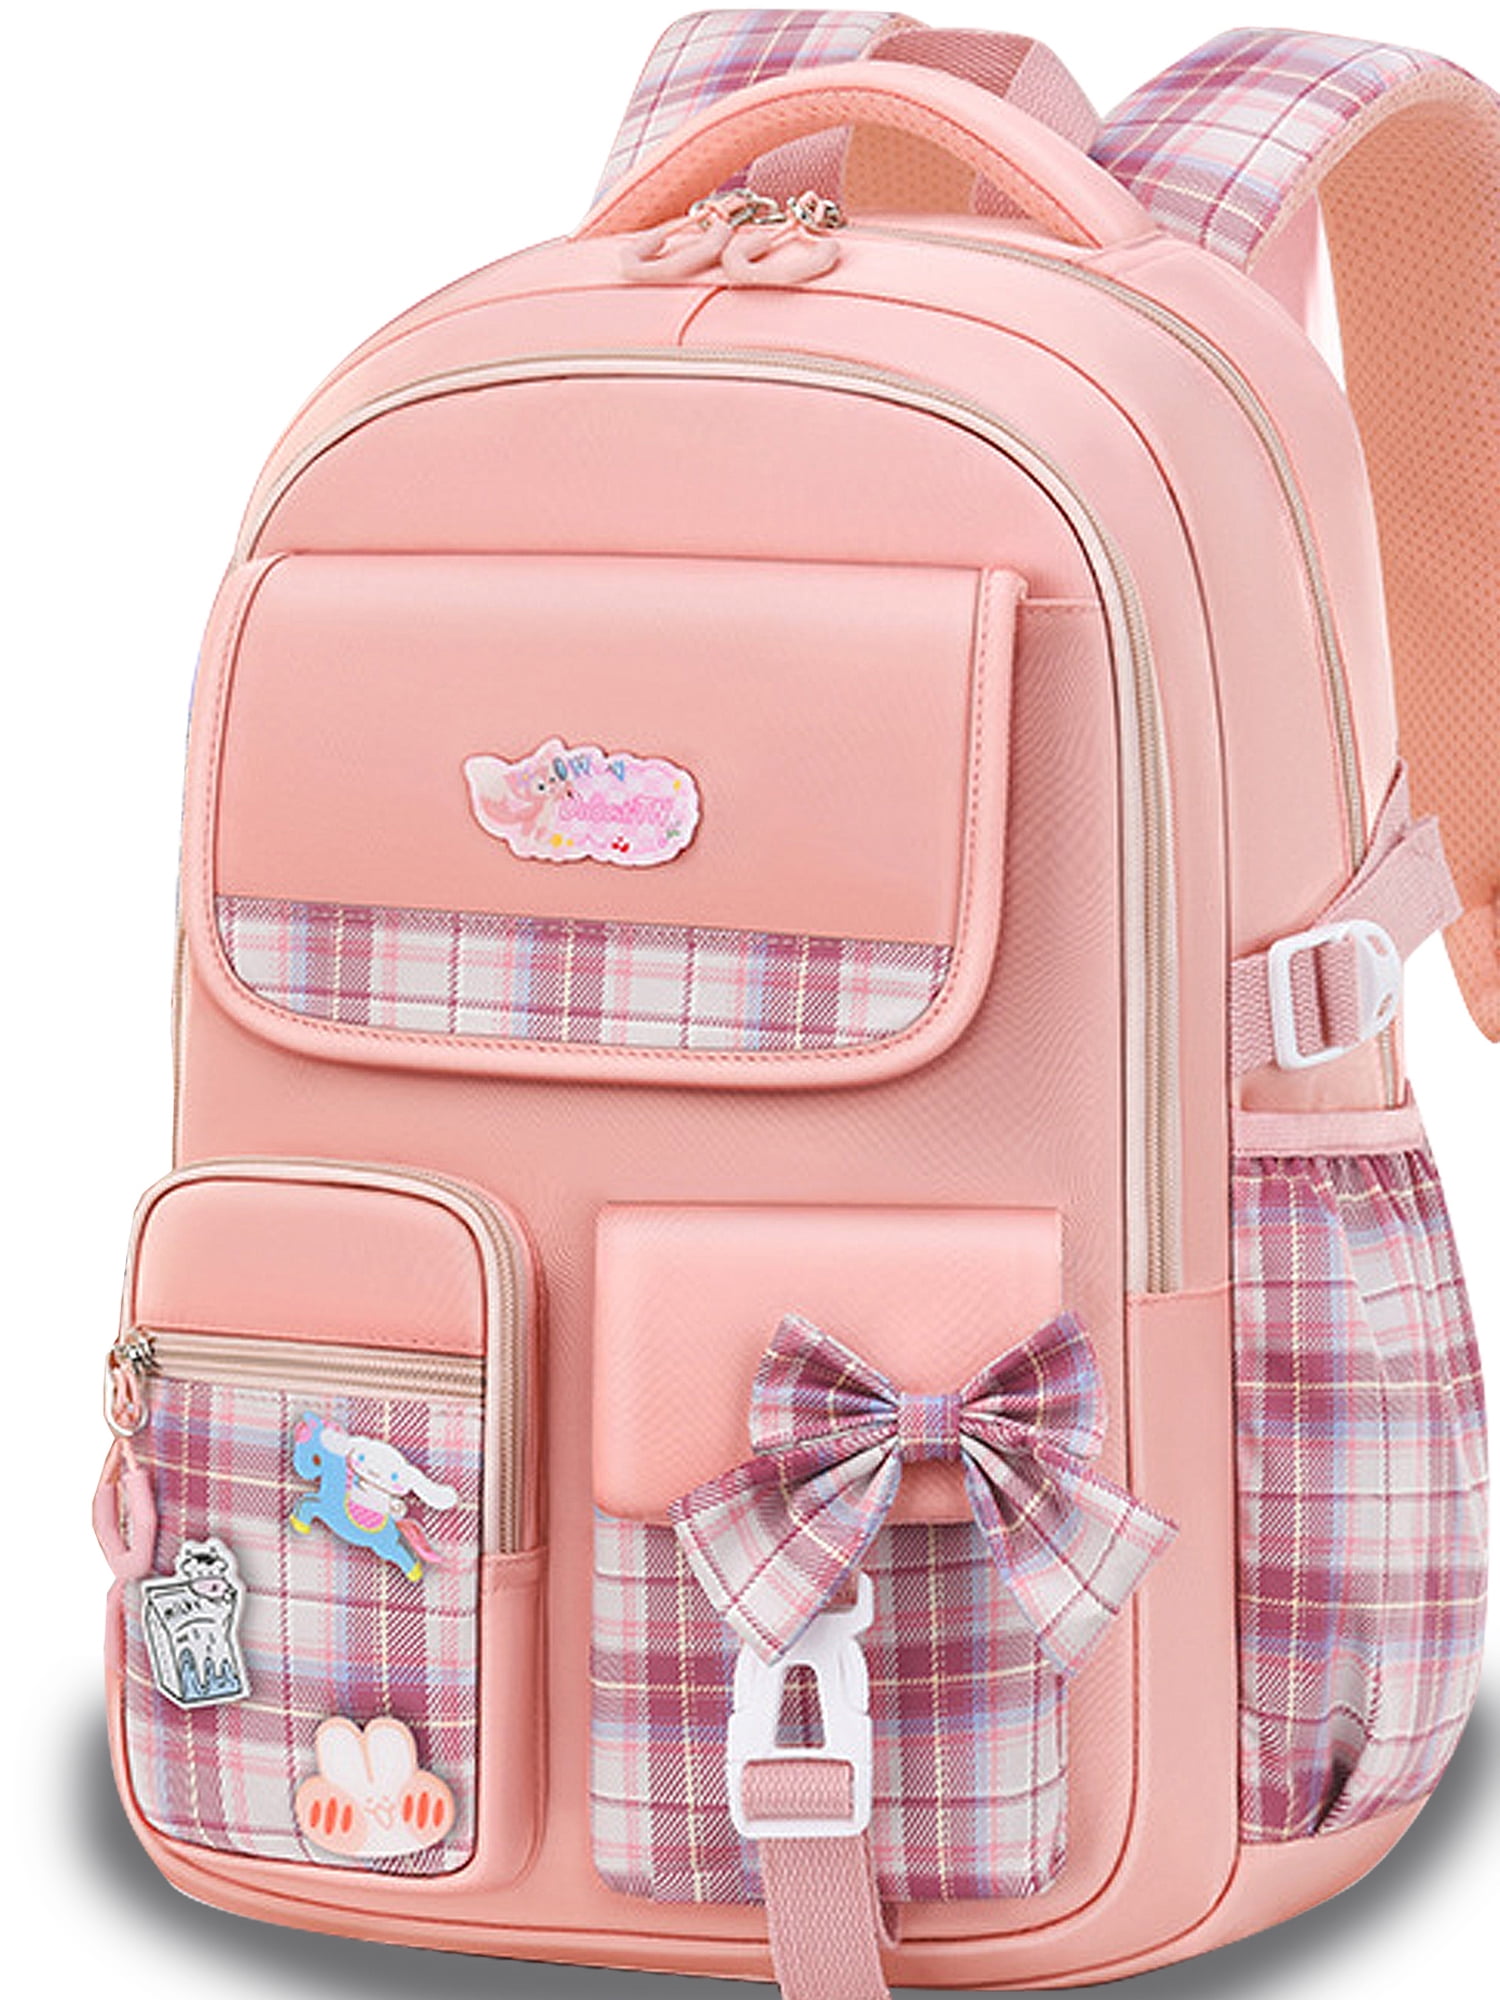 Ficcug Girls School Bag Backpacks,Waterproof Primary Students Bookbags ...